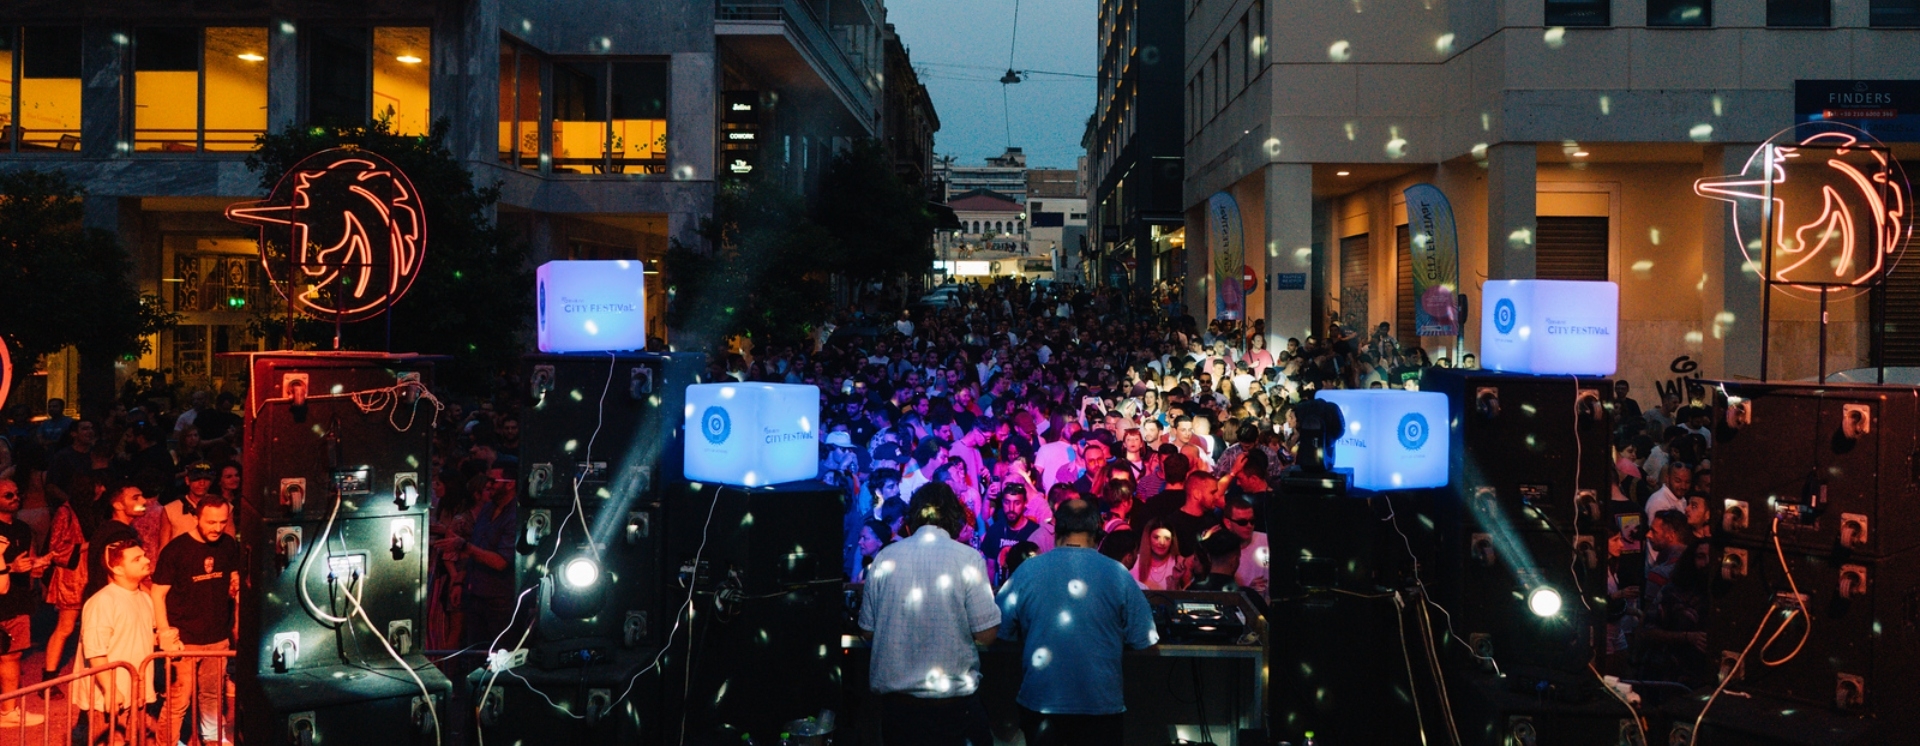 Athens City Festival: Πάρτυ και συναυλίες σε 5 απρόσμενα μέρη της Αθήνας